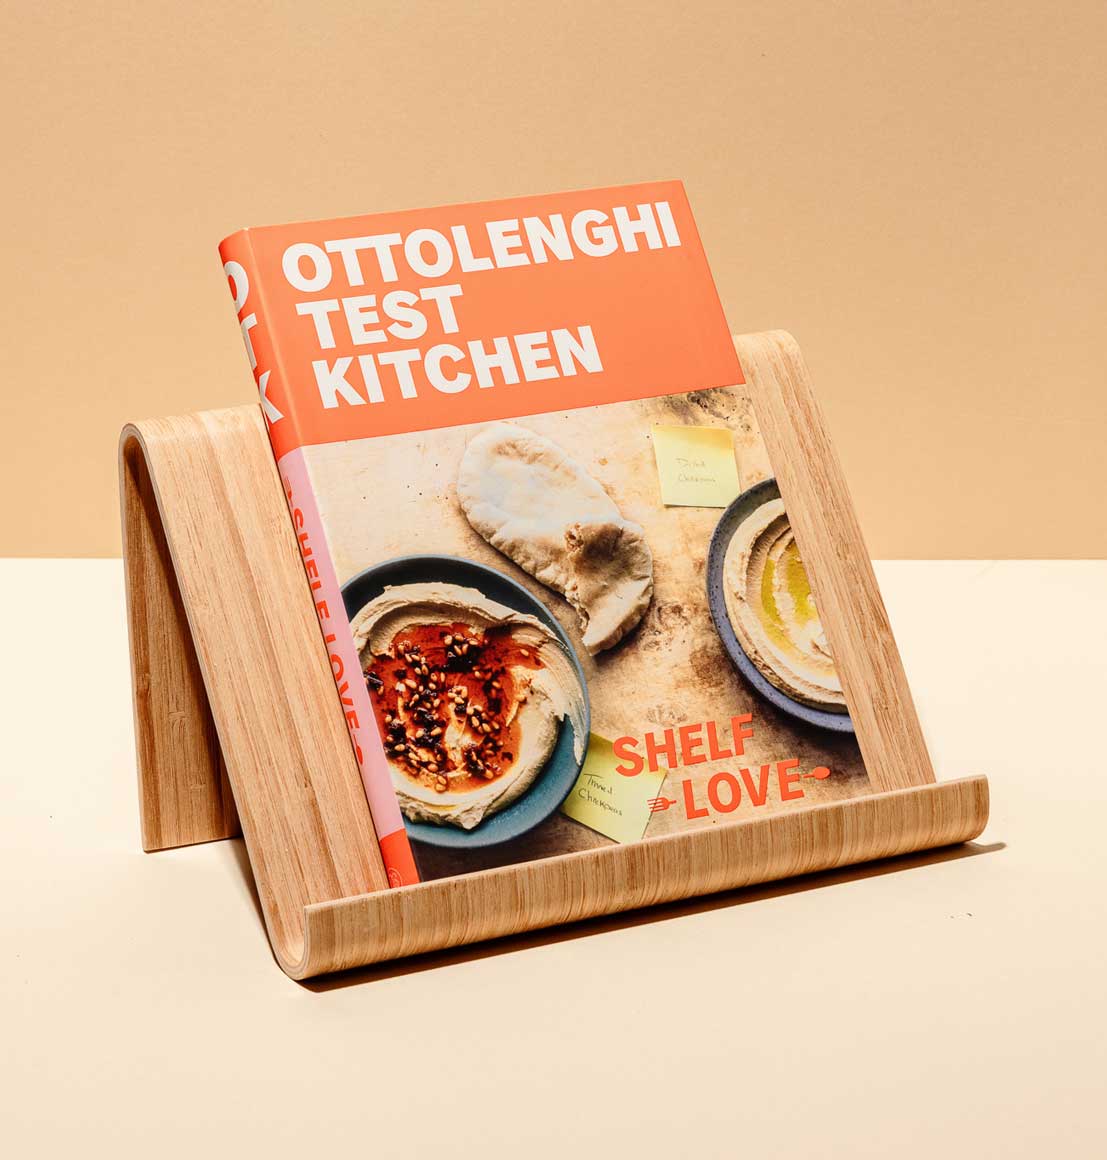 Ottolenghi Test Kitchen